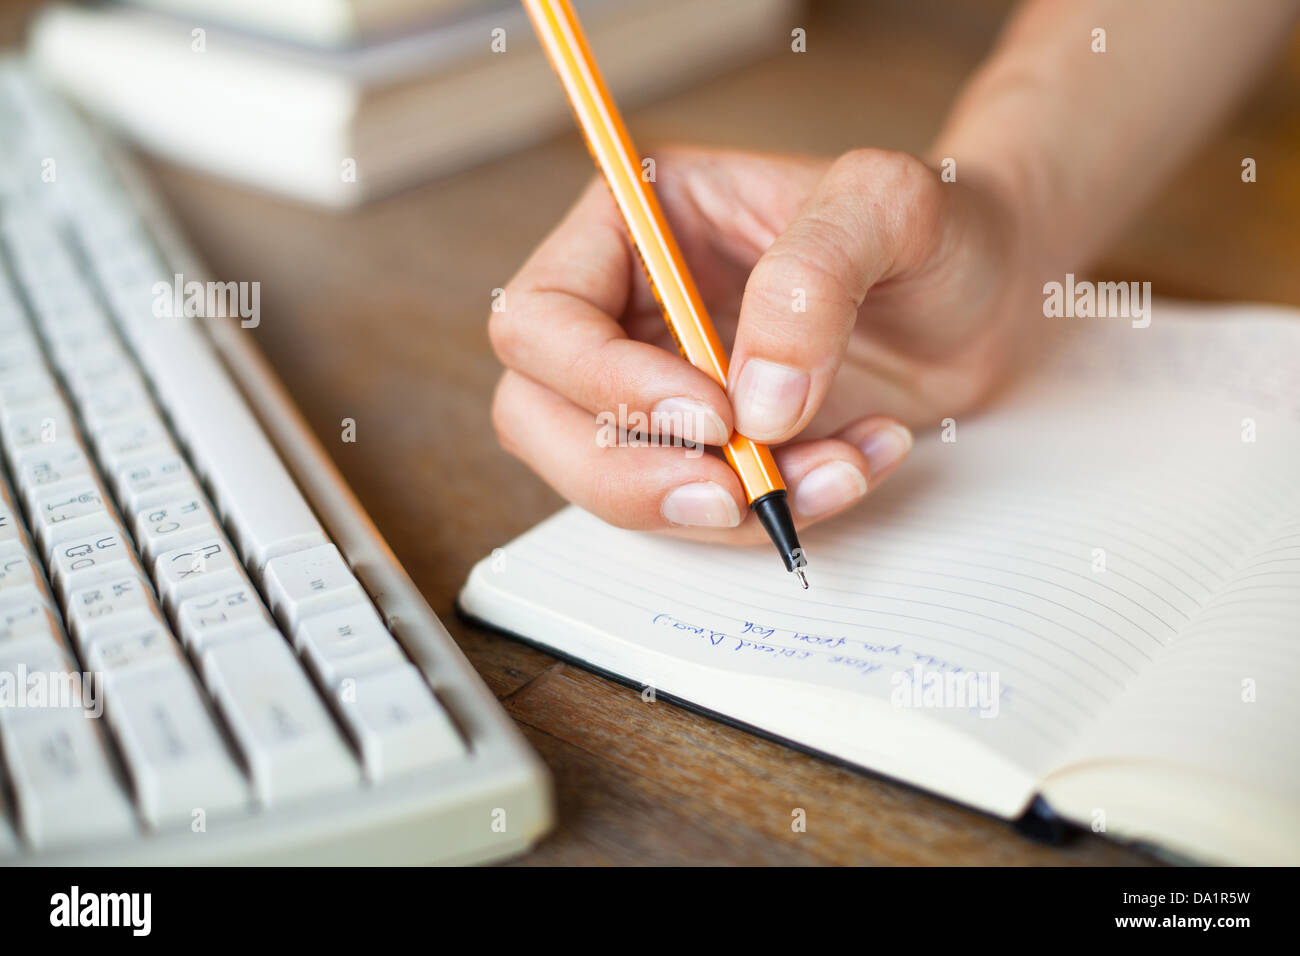 Mains écrit un stylo dans un ordinateur portable, clavier de l'ordinateur en arrière-plan Banque D'Images